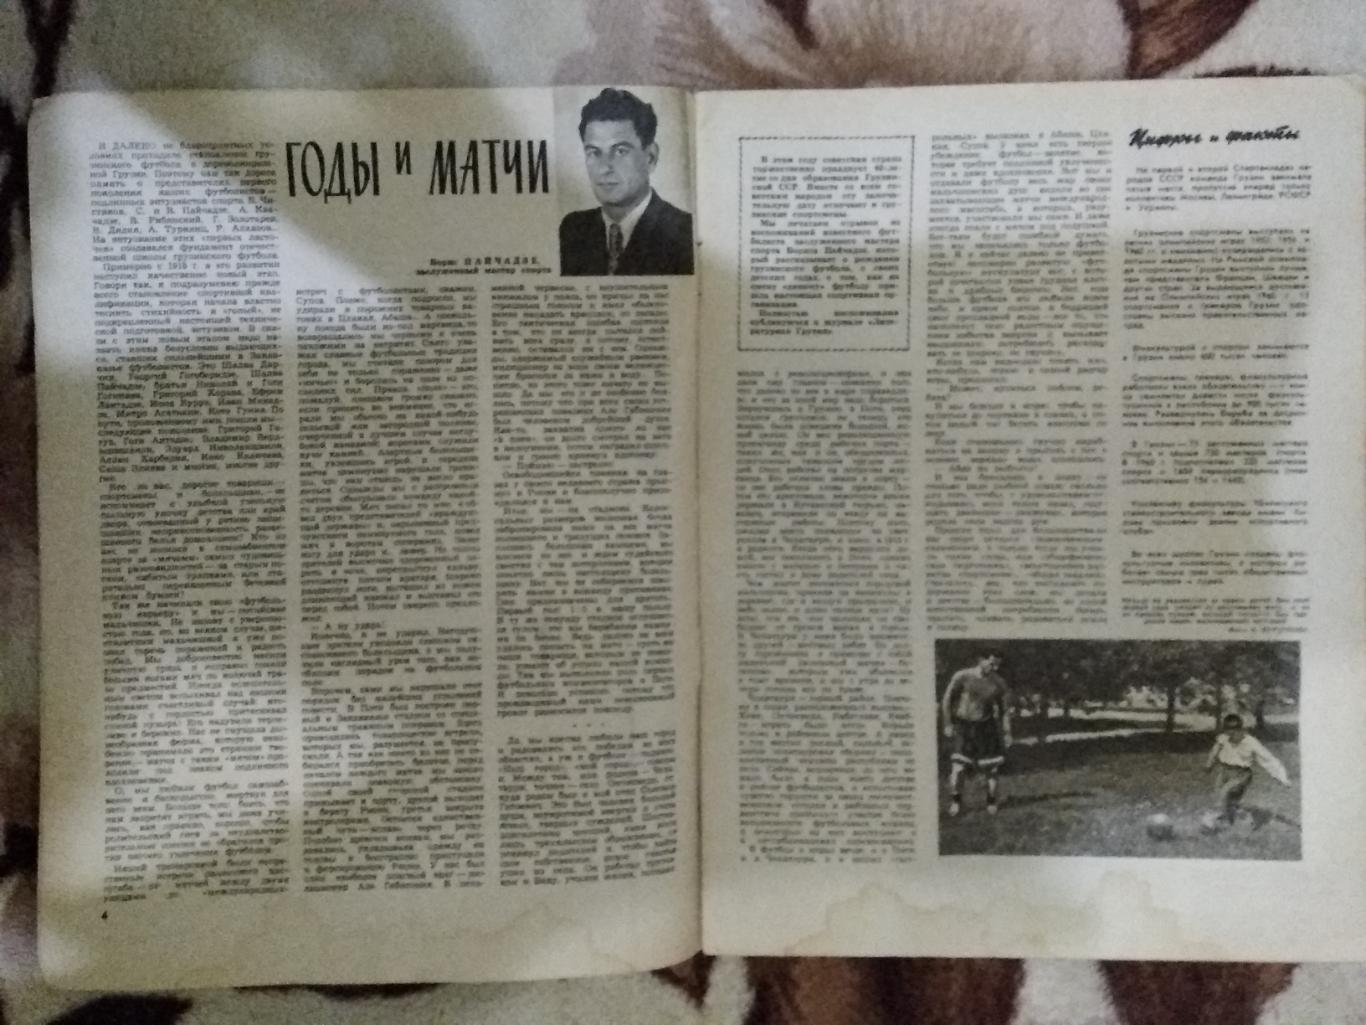 Журнал.Физкультура и спорт № 2 1961 г. (ФиС). 1